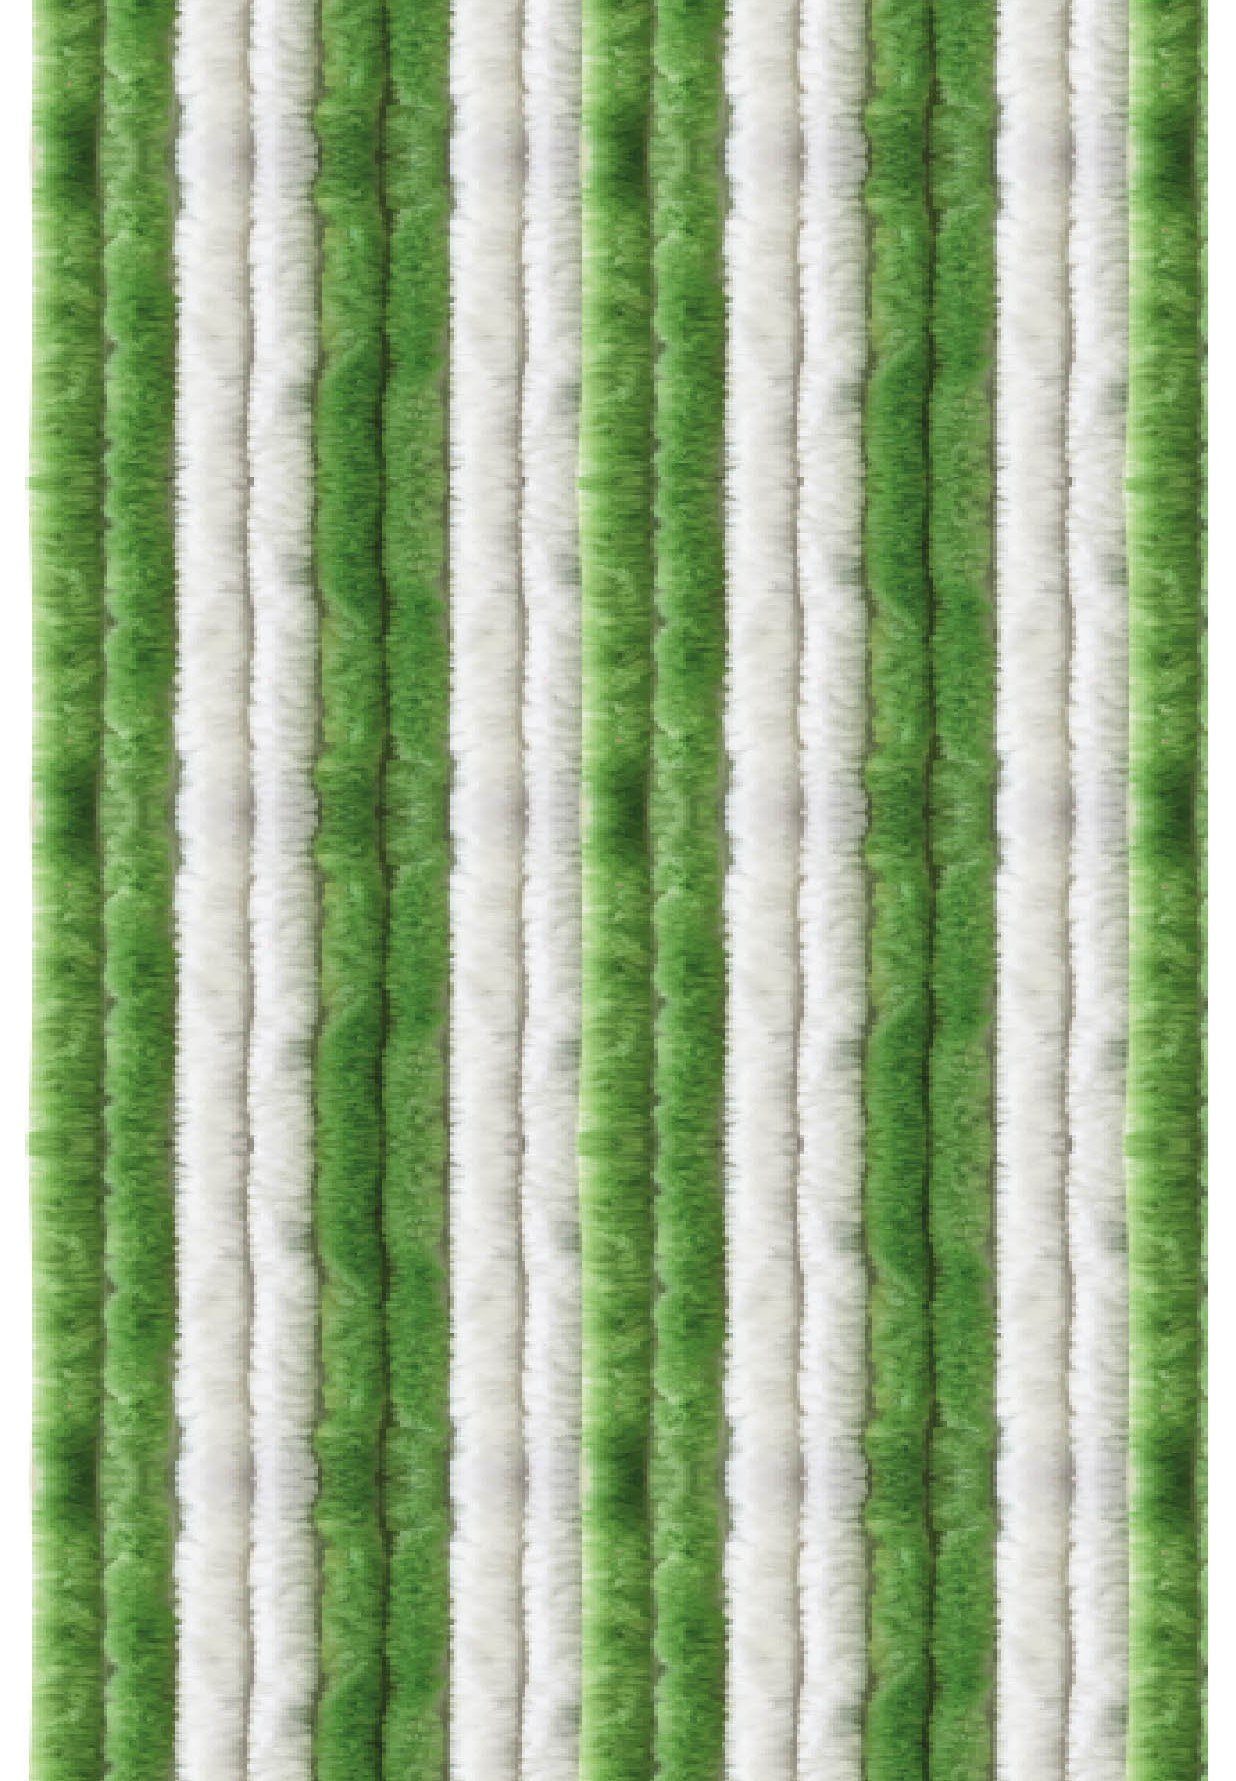 Türvorhang Flauschi, Arsvita, Ösen (1 St), blickdicht, Flauschvorhang in 80cm Breite, perfekter Insekten- und Sichtschutz, viele versch. Farben verfügbar Grün - Weiß | Raumteiler-Vorhänge